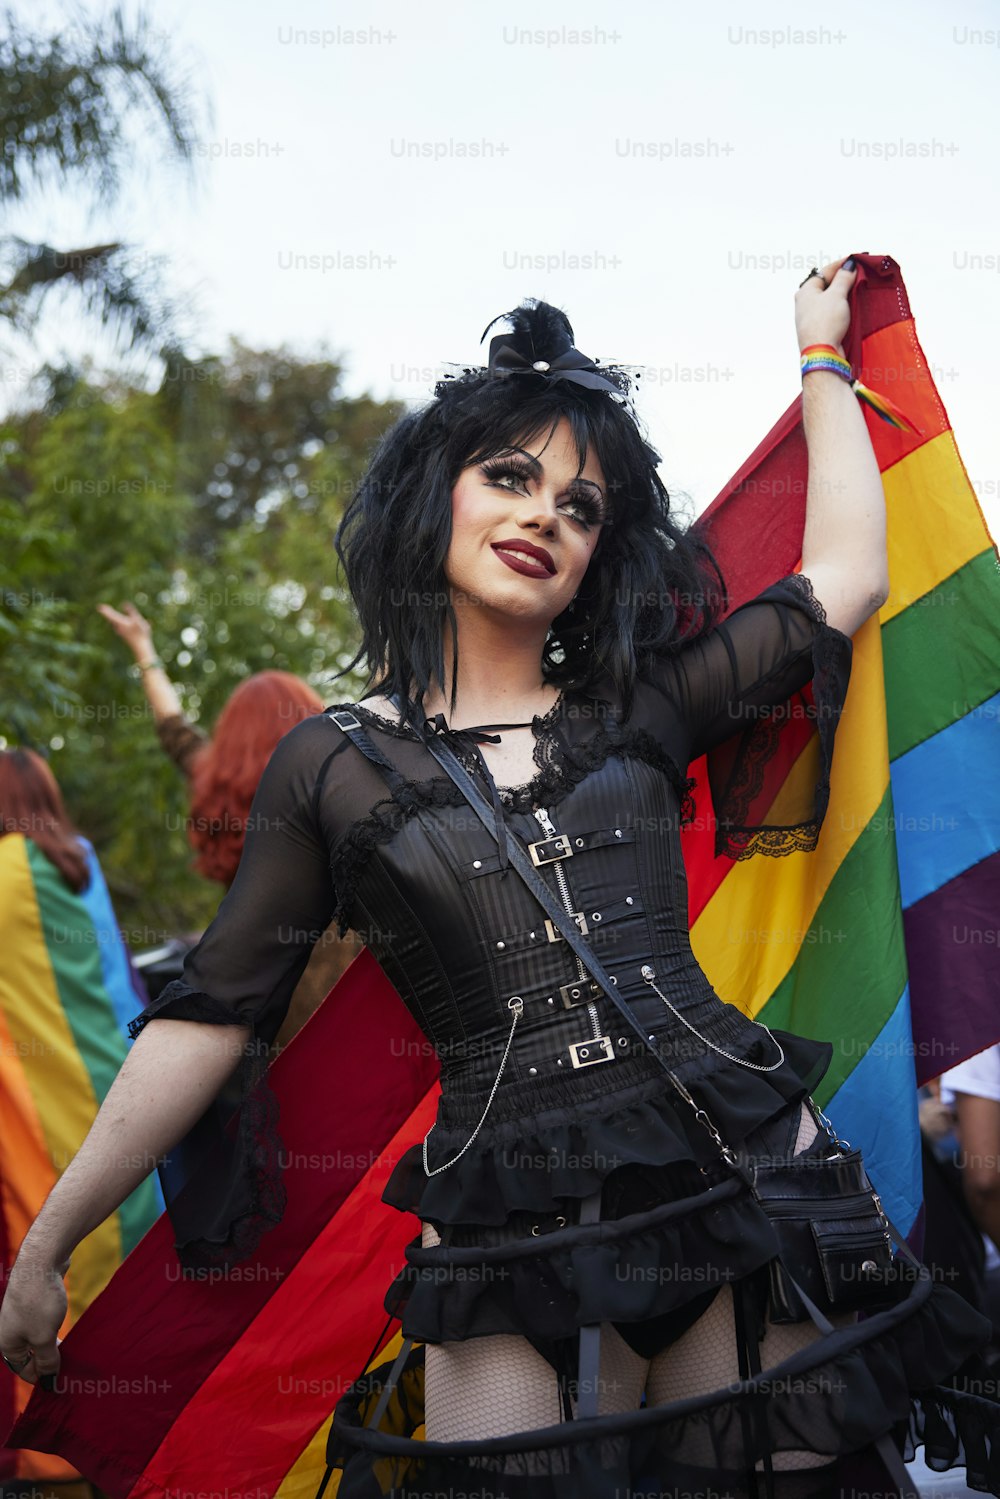 Una mujer con un corsé sosteniendo una bandera del arco iris